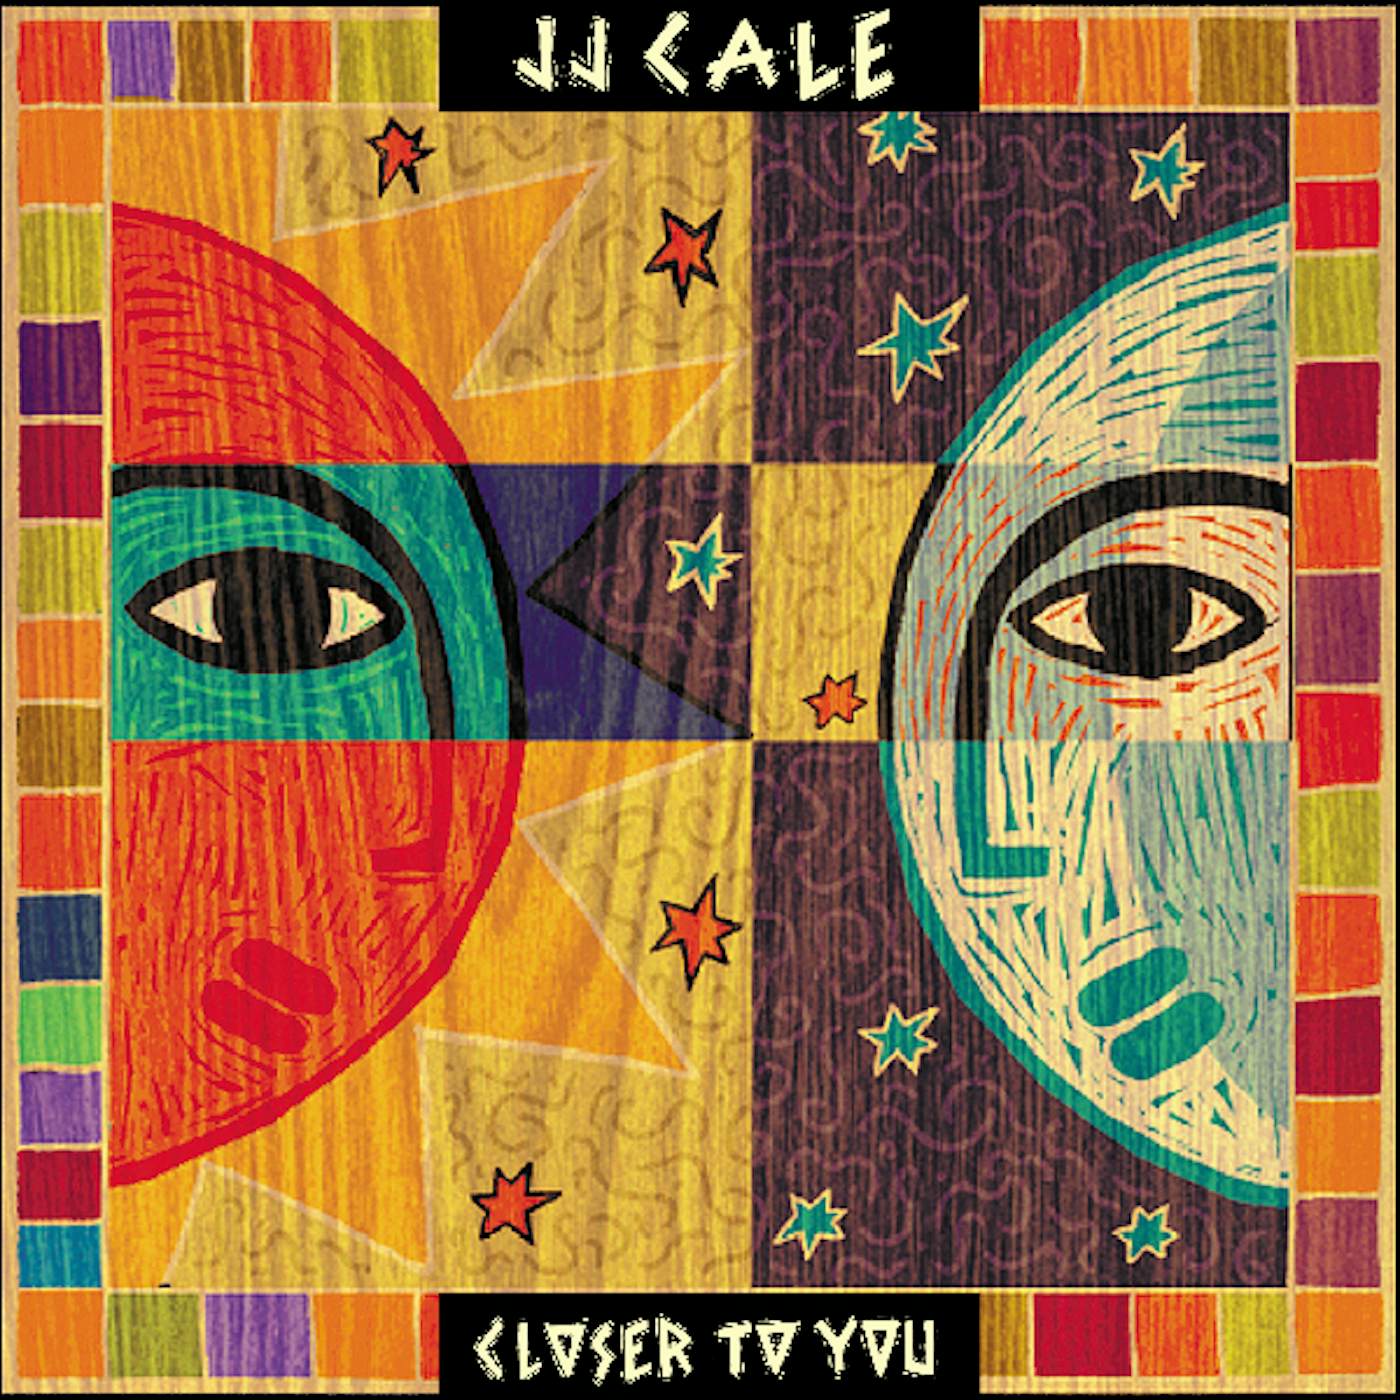 J.J. Cale CLOSER TO YOU CD